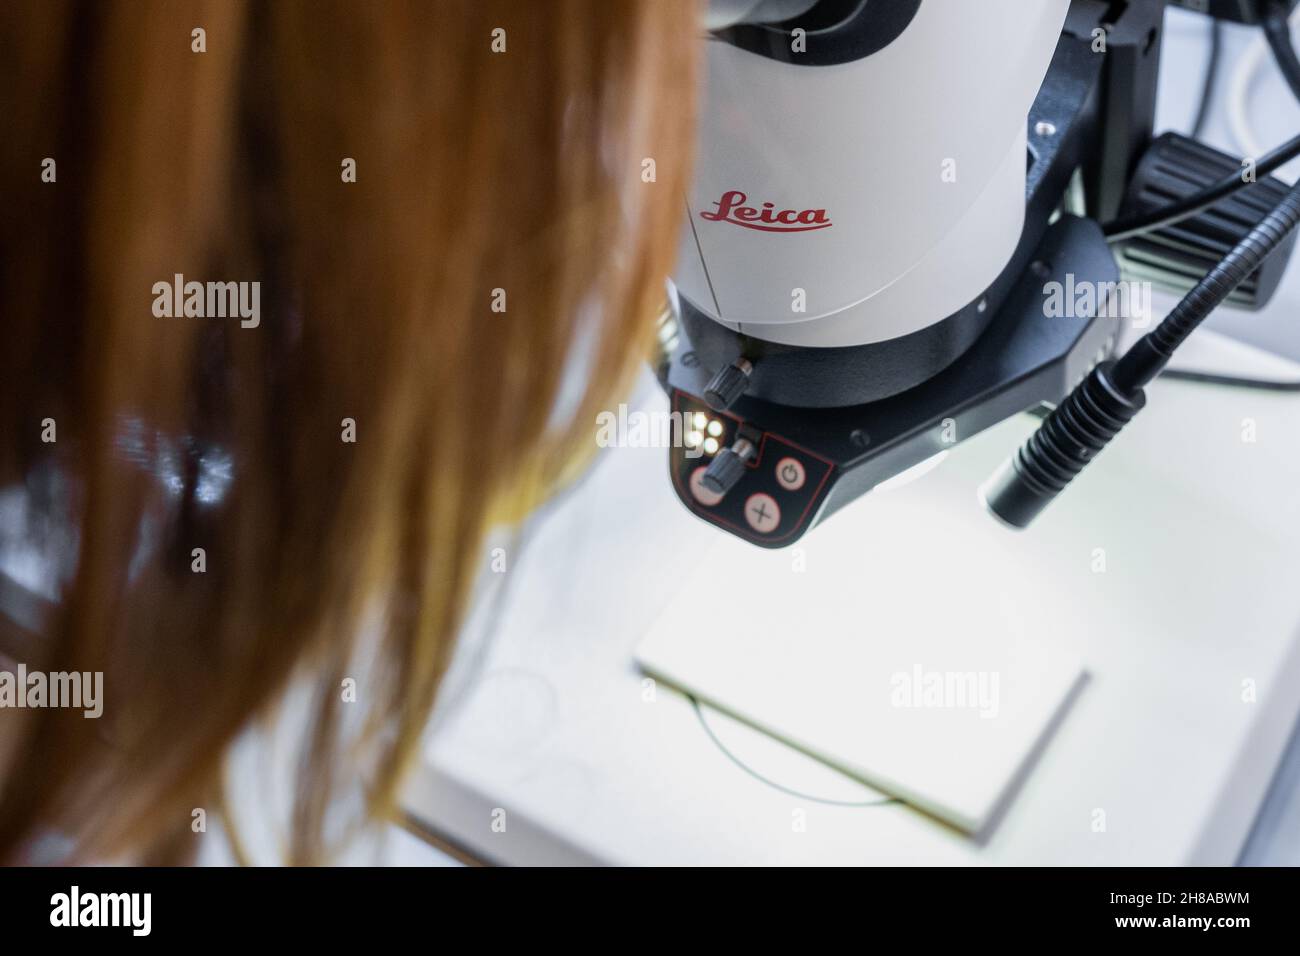 Le scientifique utilise le microscope Leica pour l'analyse biochimique ou en biologie cellulaire, novembre 2021, San Francisco, États-Unis. Banque D'Images